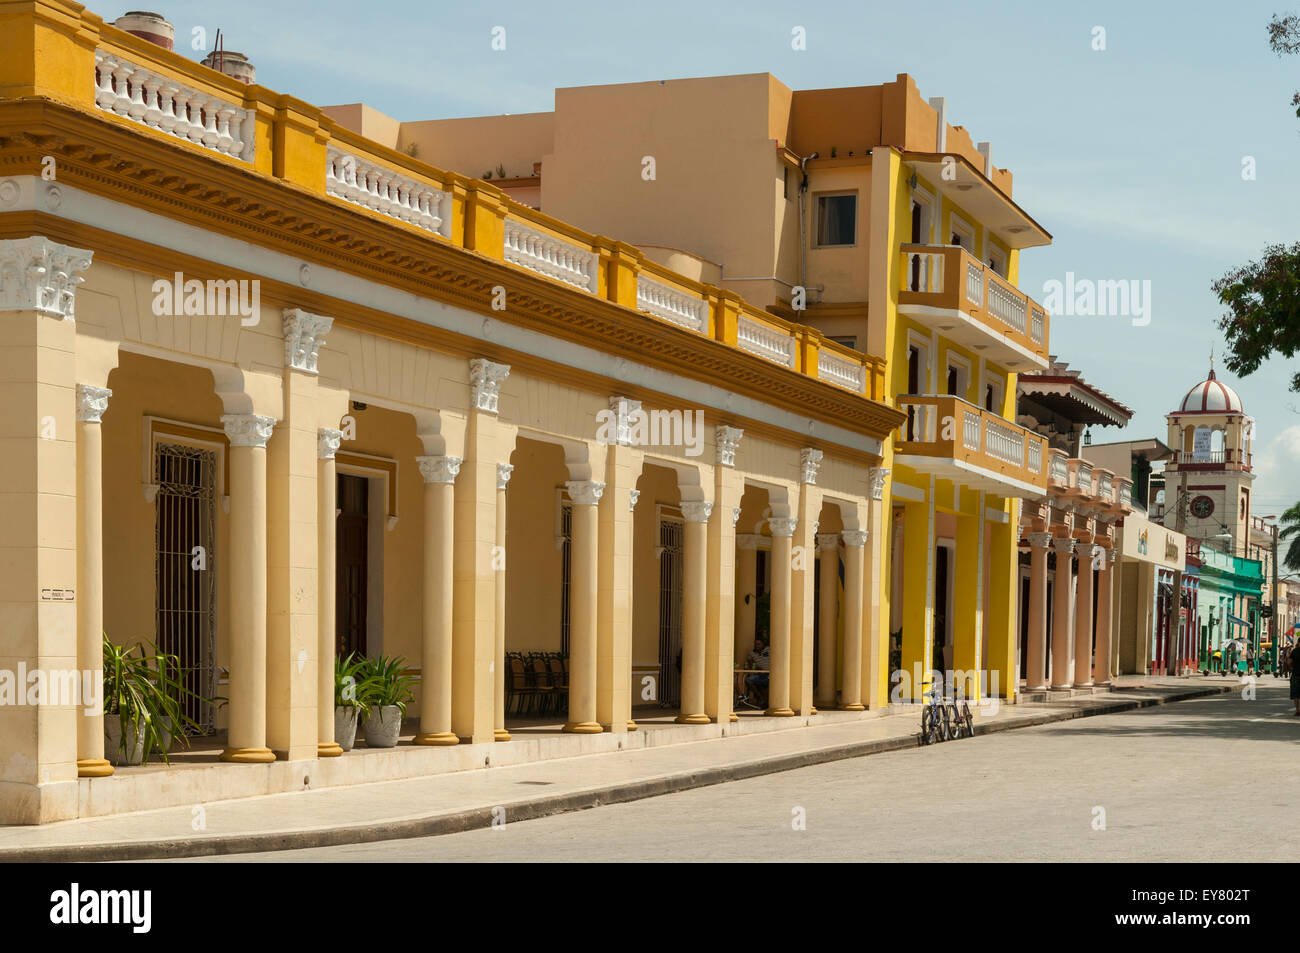 Les vieux bâtiments sur le Parque Cespedes, Bayamos, Cuba Banque D'Images